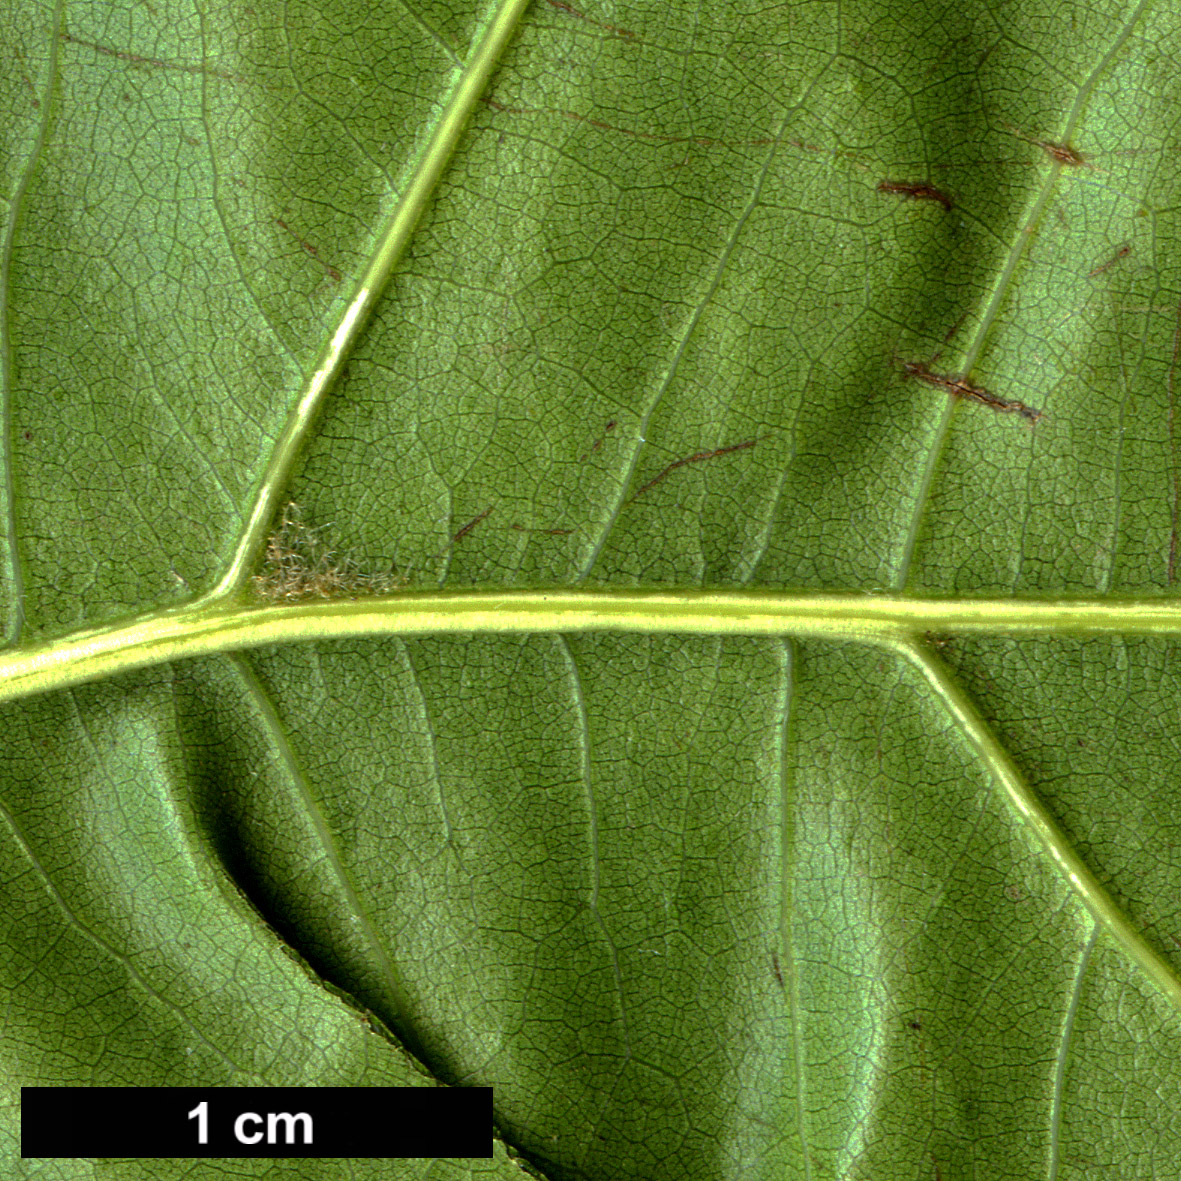 High resolution image: Family: Fagaceae - Genus: Quercus - Taxon: texana